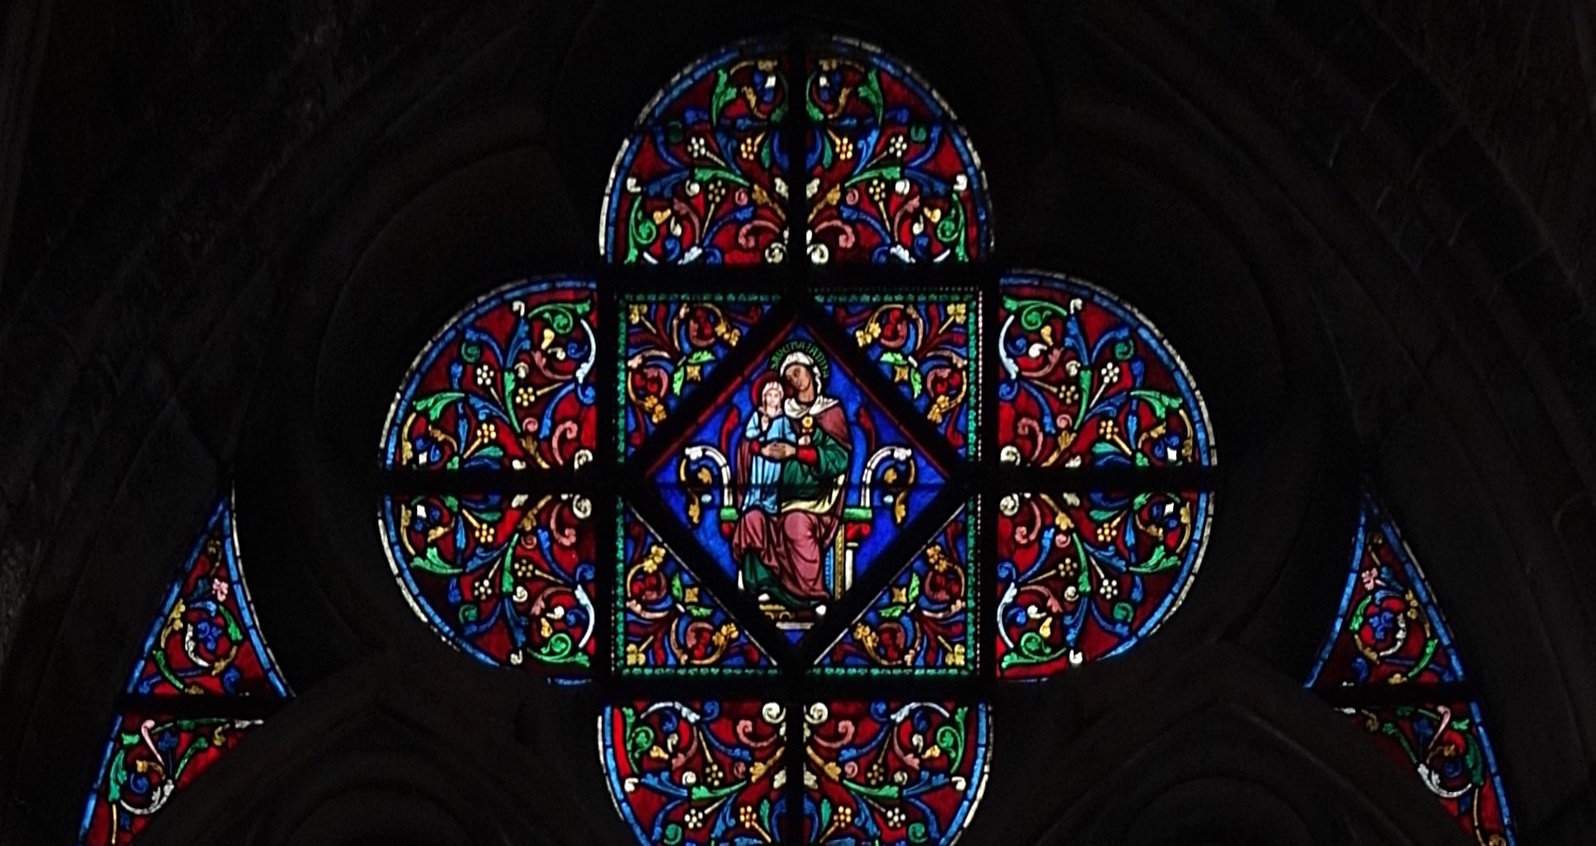 Arbre de Jessé - Cathédrale Notre-Dame - Paris